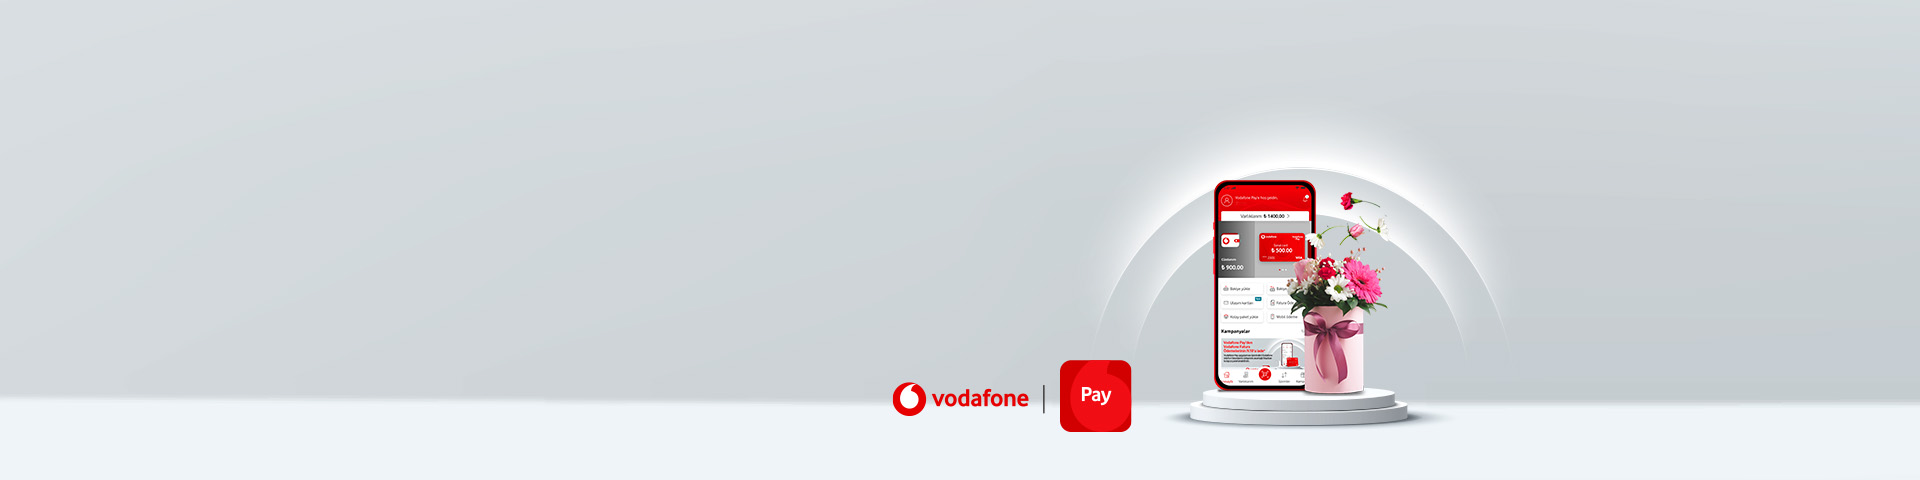 Vodafone Payliler çiçek alışverişlerinde nakit iade kazanıyor!